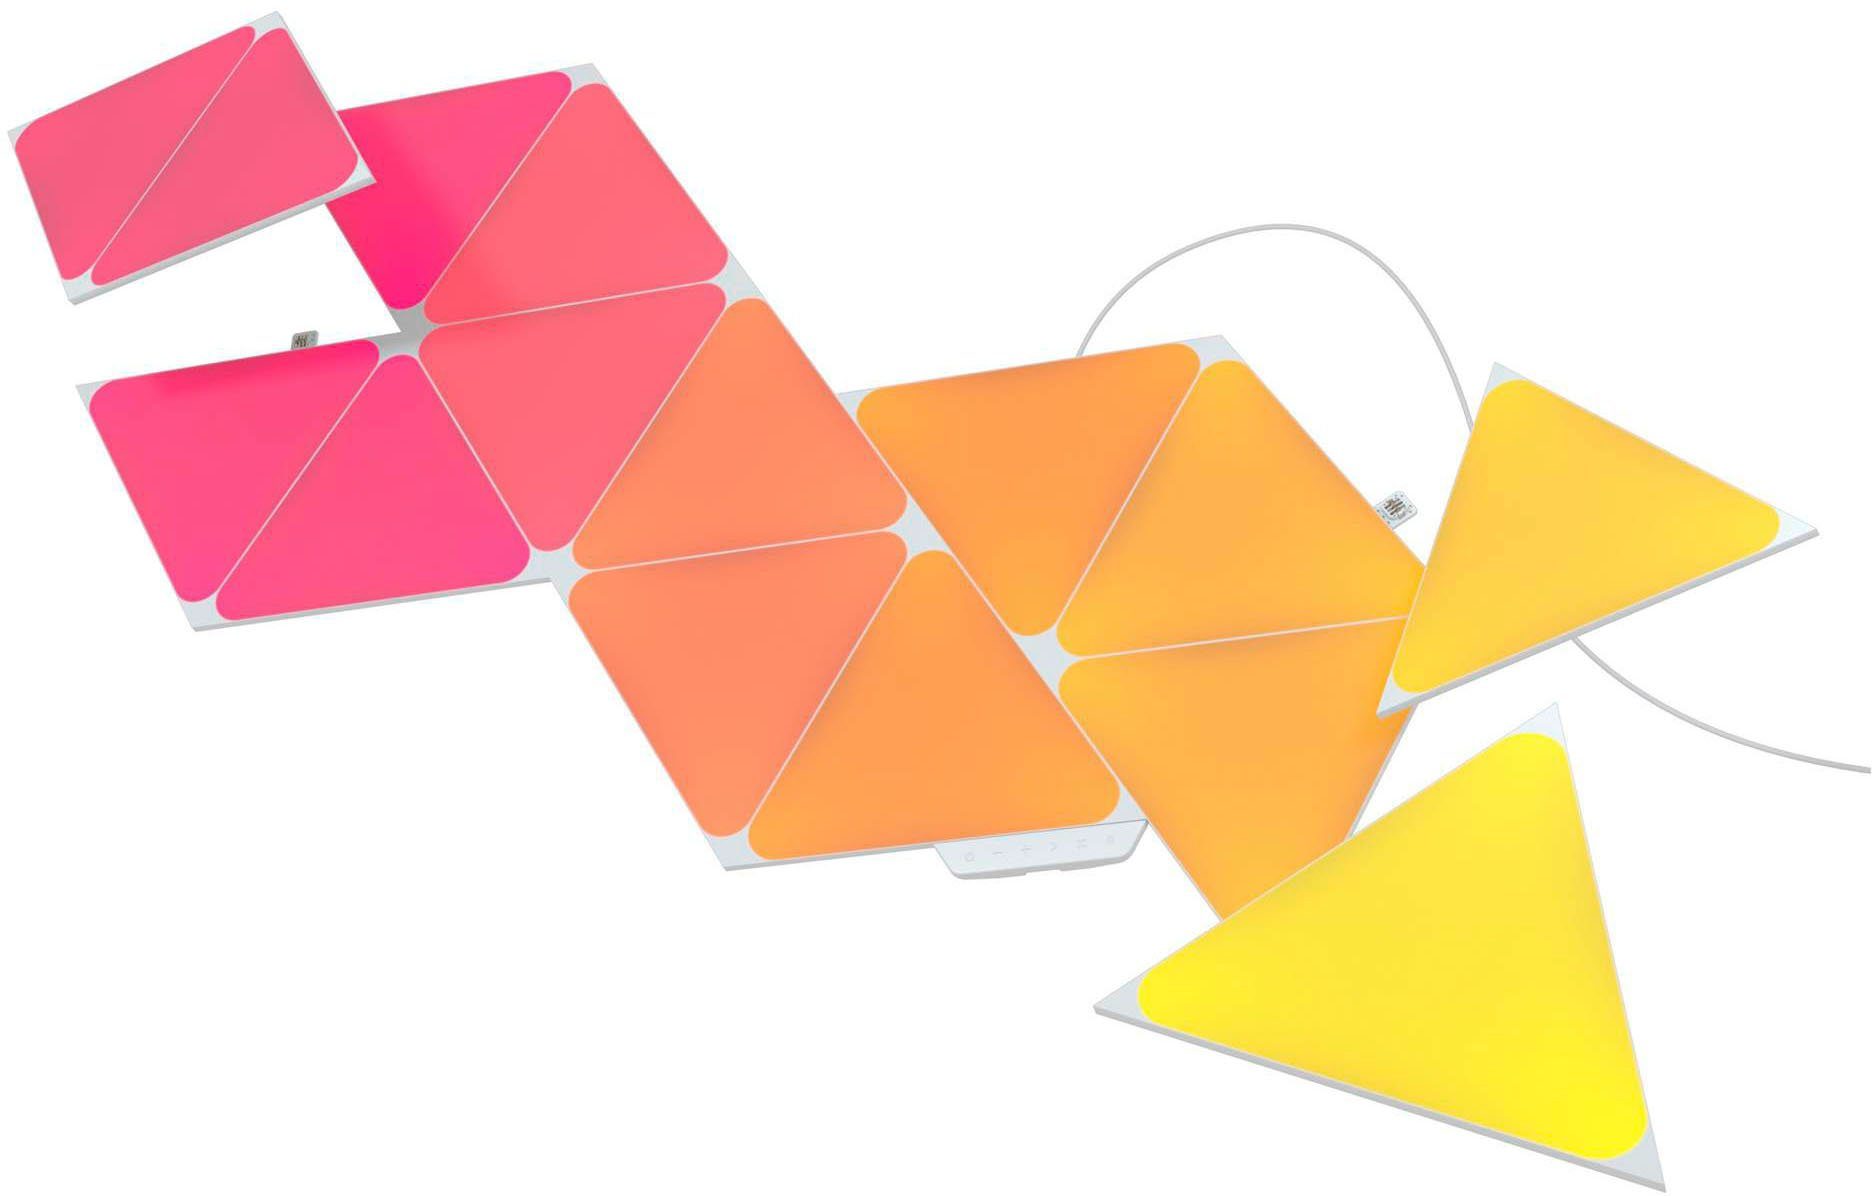 integriert, LED Farbwechsler Triangles, Dimmfunktion, nanoleaf LED Panel fest